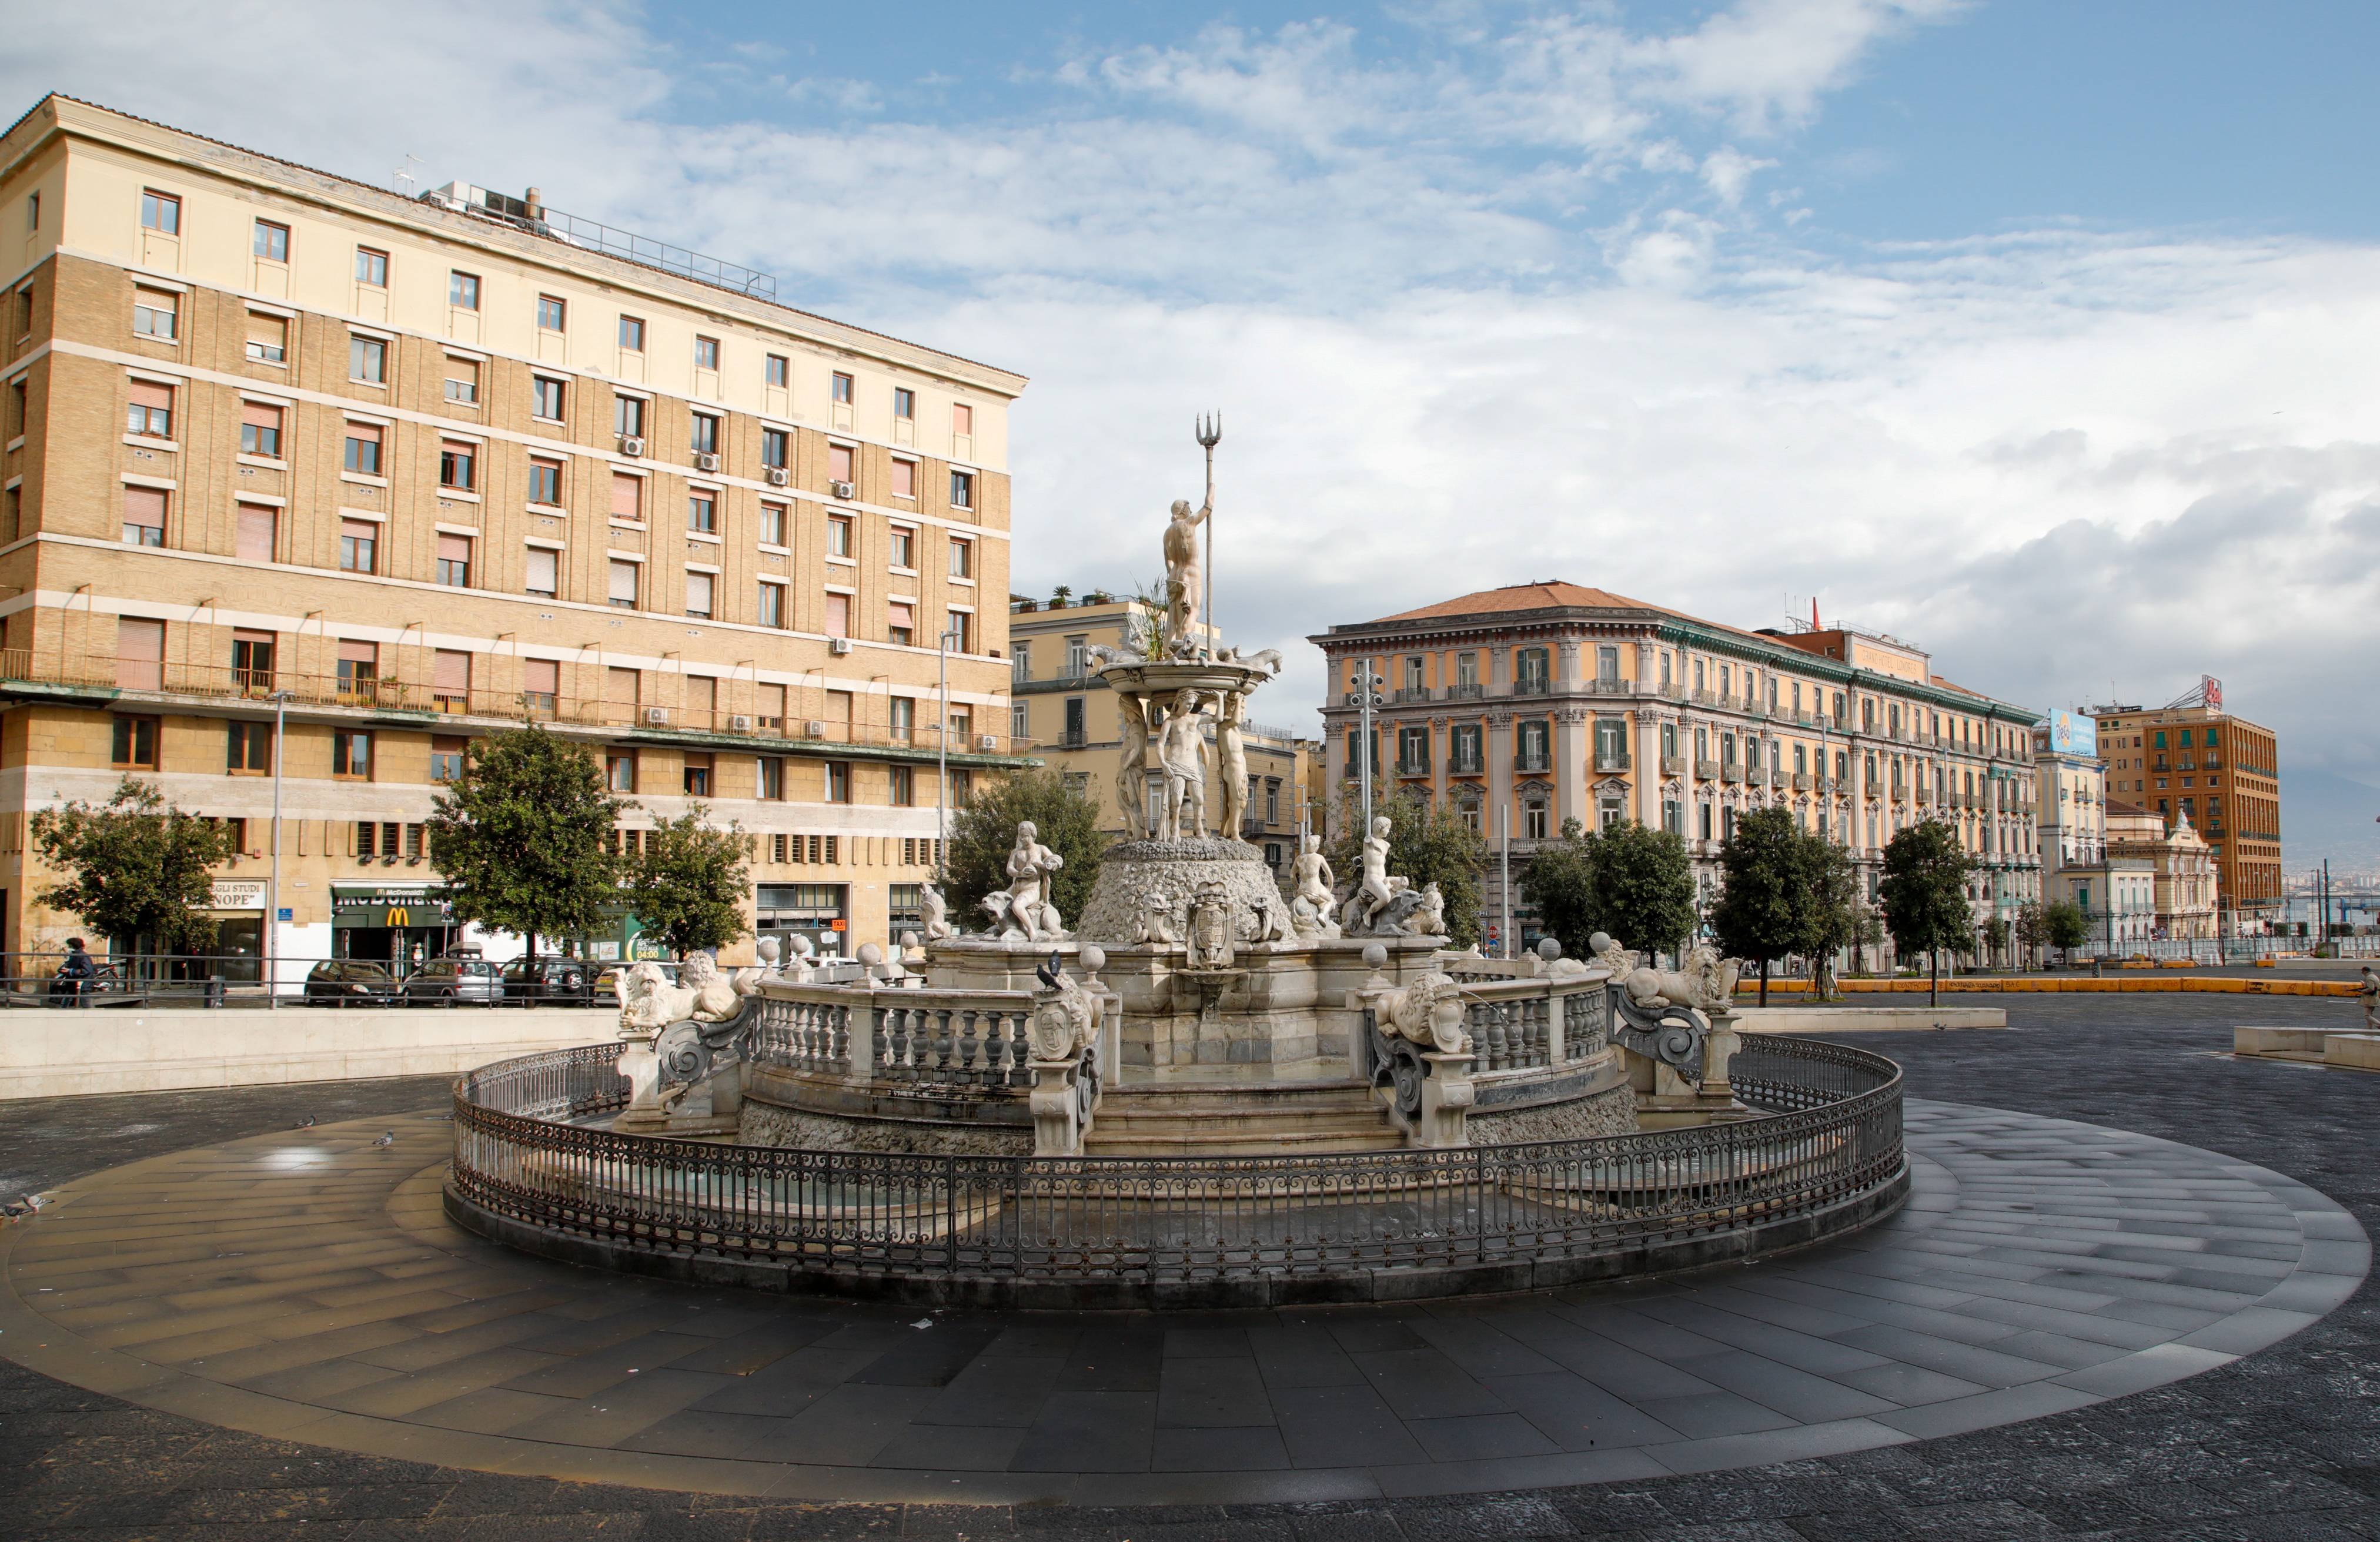 这是11月16日在意大利那不勒斯拍摄的空荡的广场